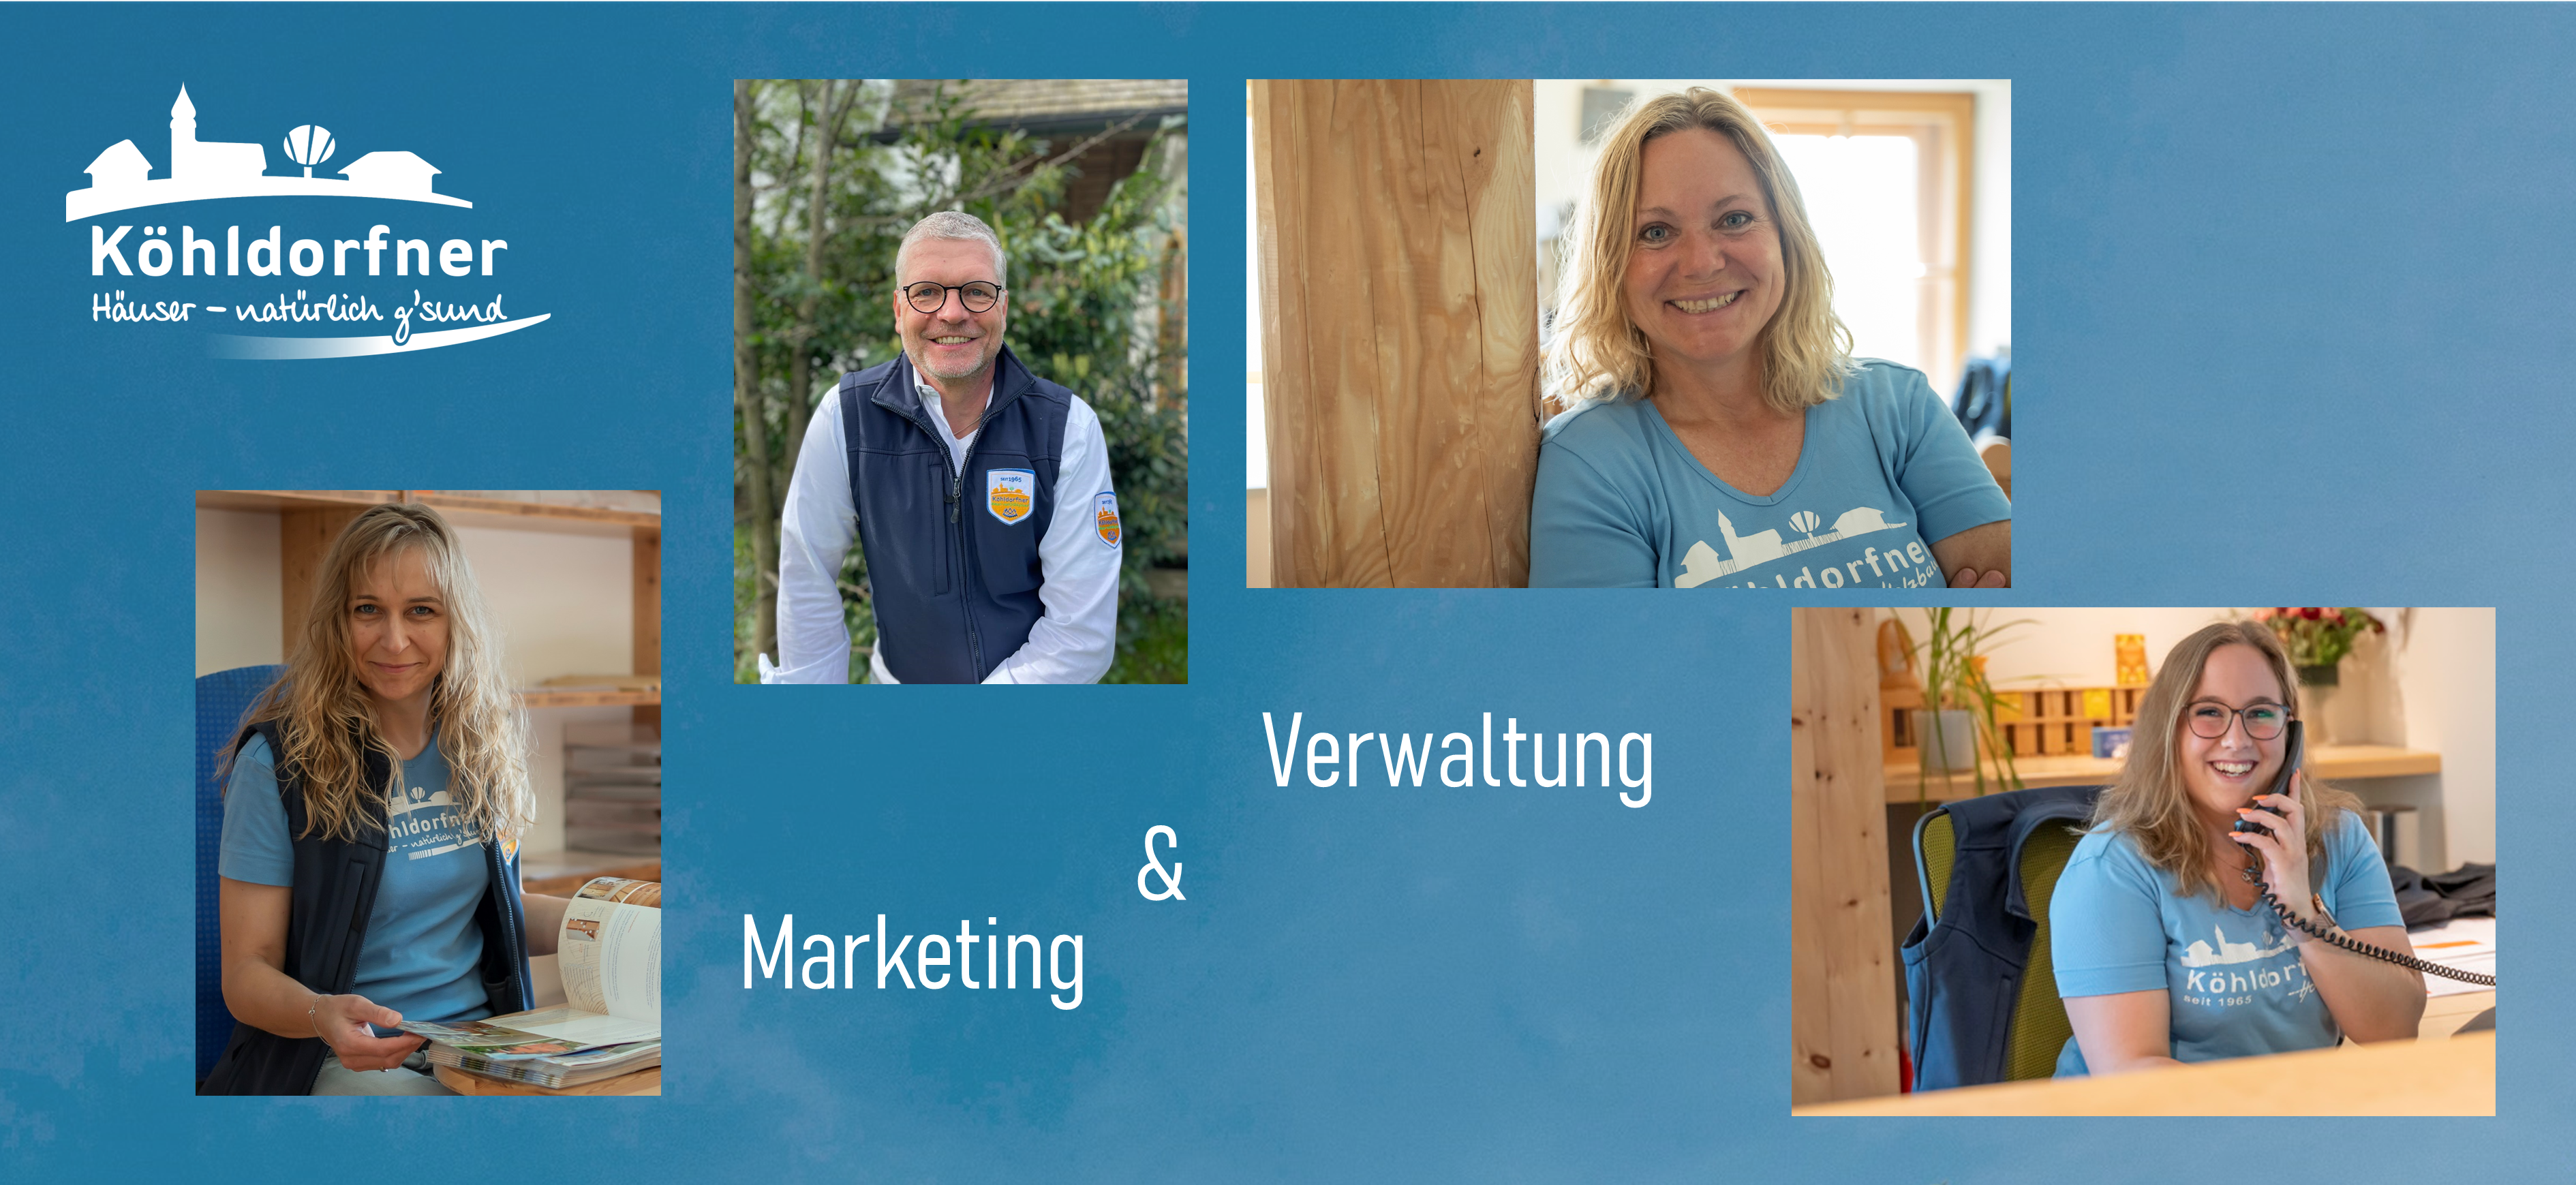 https://www.koehldorfner.de/wp-content/uploads/2015/05/Header_Vorstellung-Marketing-und-Verwaltung-auf-Homepage-2024.png